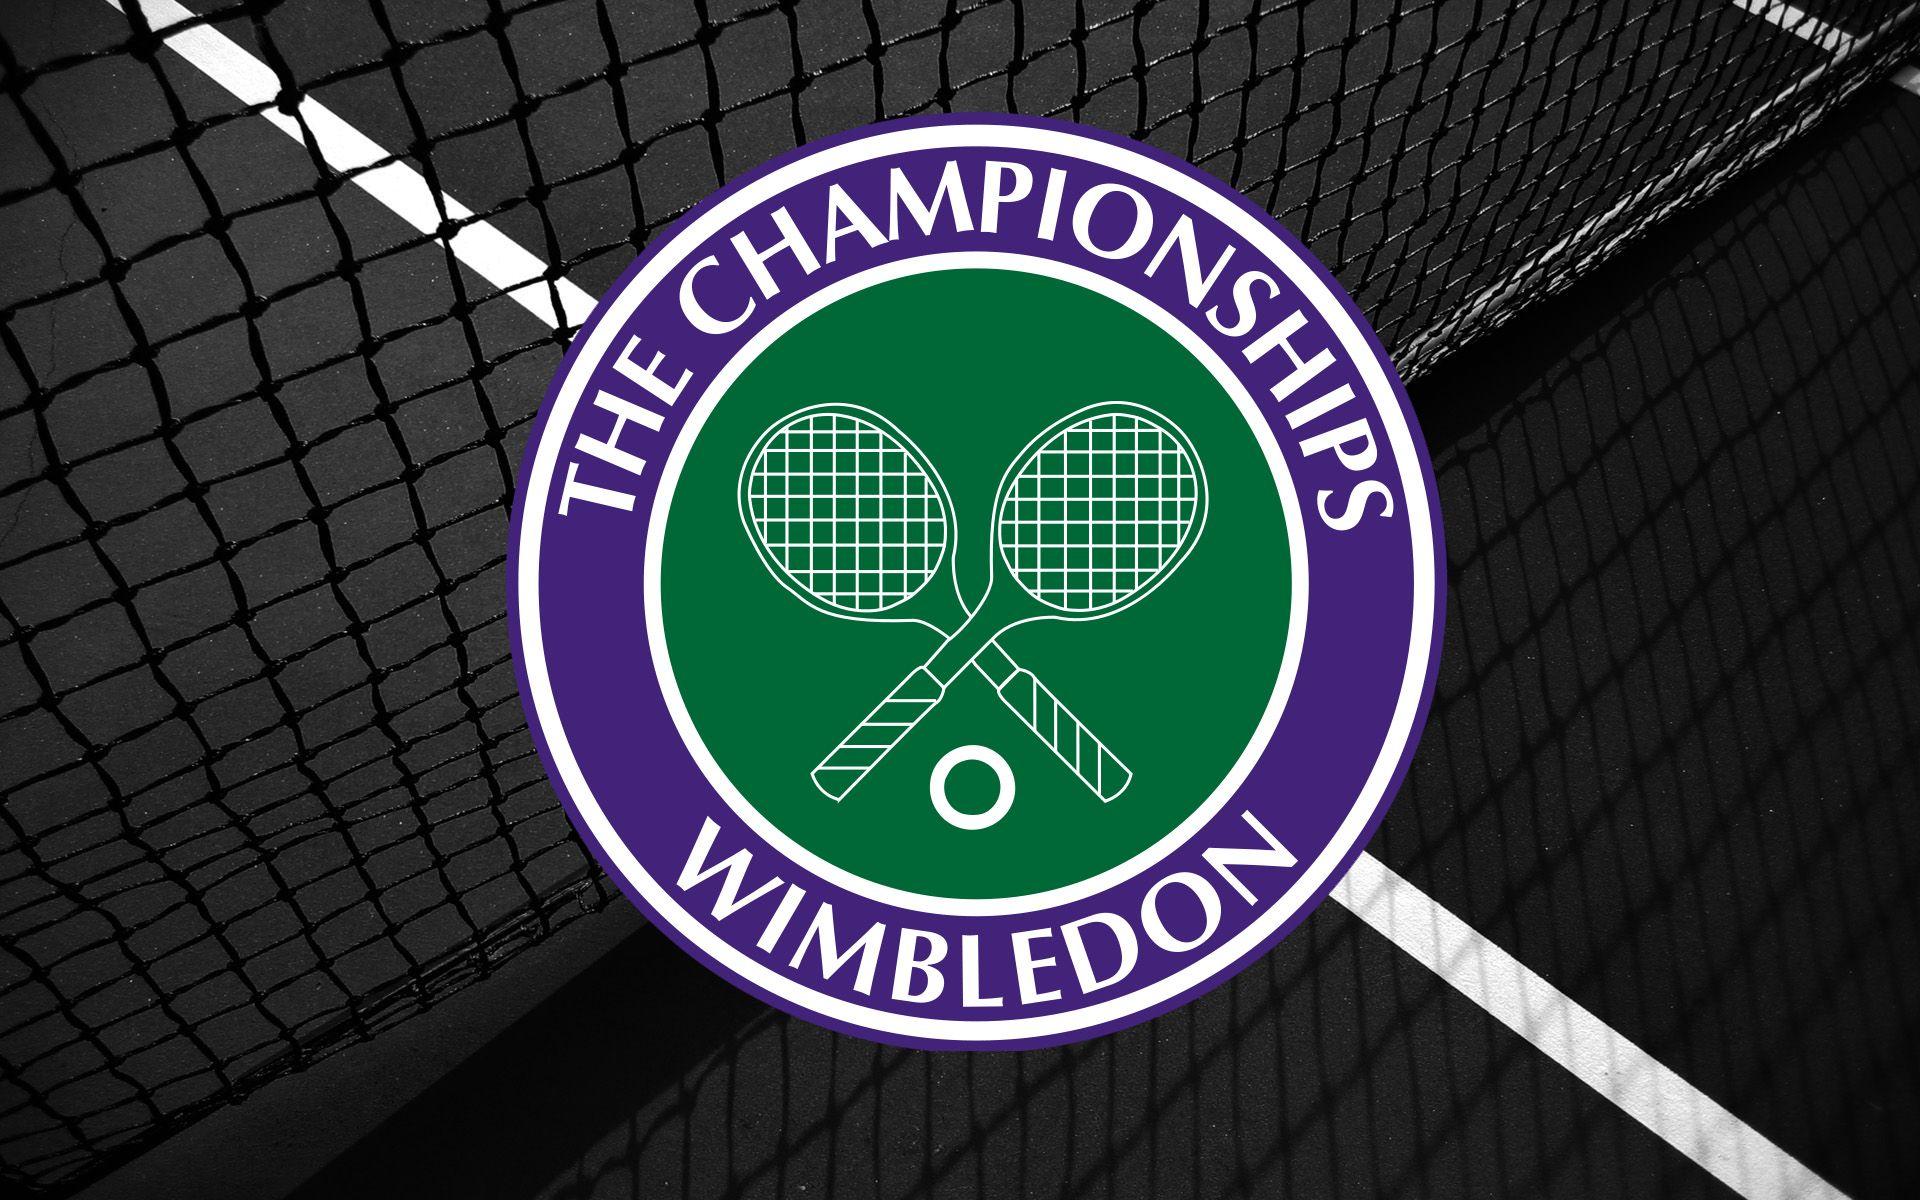 Wimbledon 2015 Wallpaper